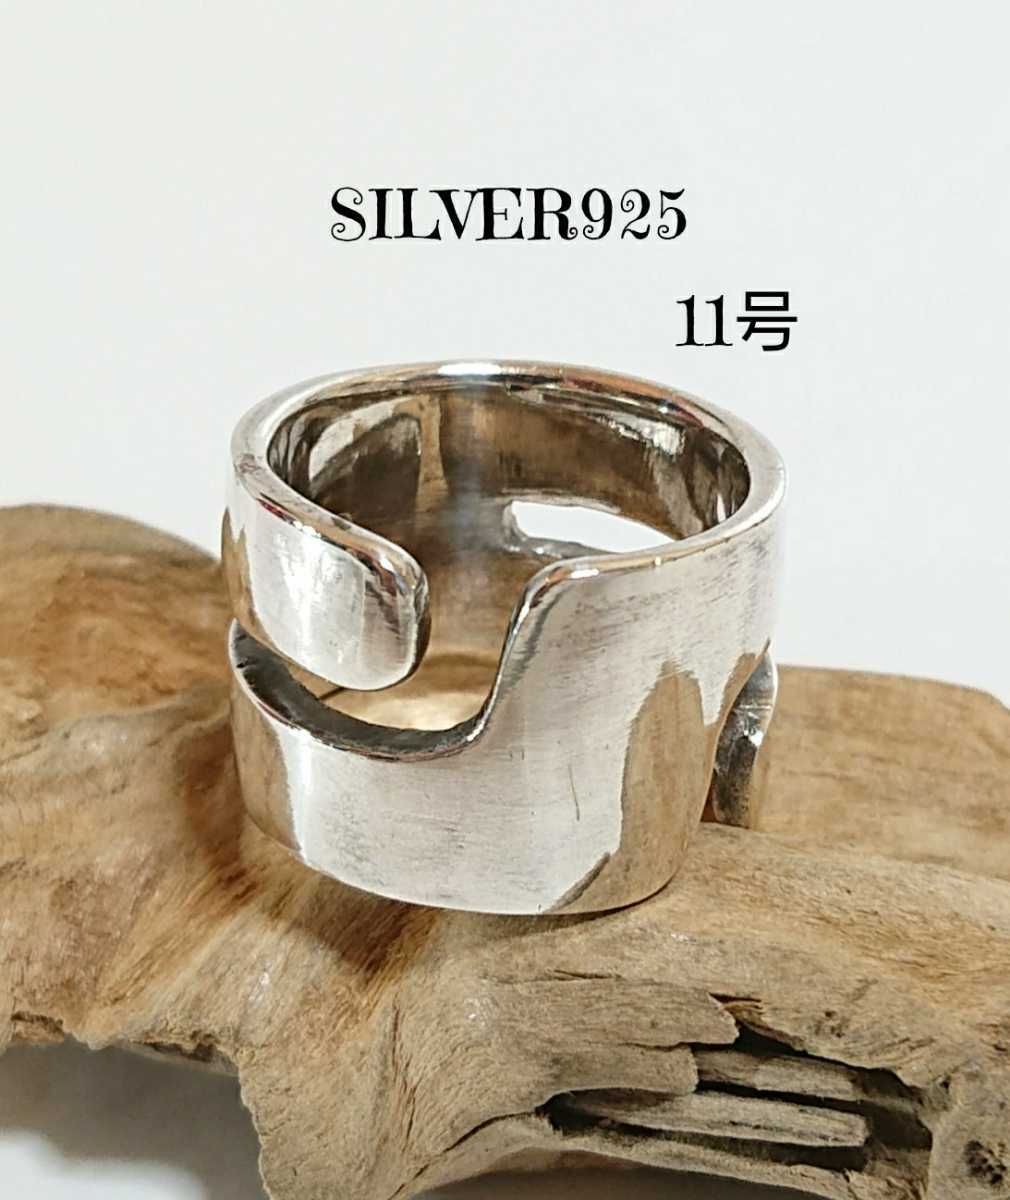 4045 SILVER925 широкий кольцо 11 номер серебряный 925 производства готический широкий простой деформация дизайн flat удар . flat доска retro готический широкий унисекс *